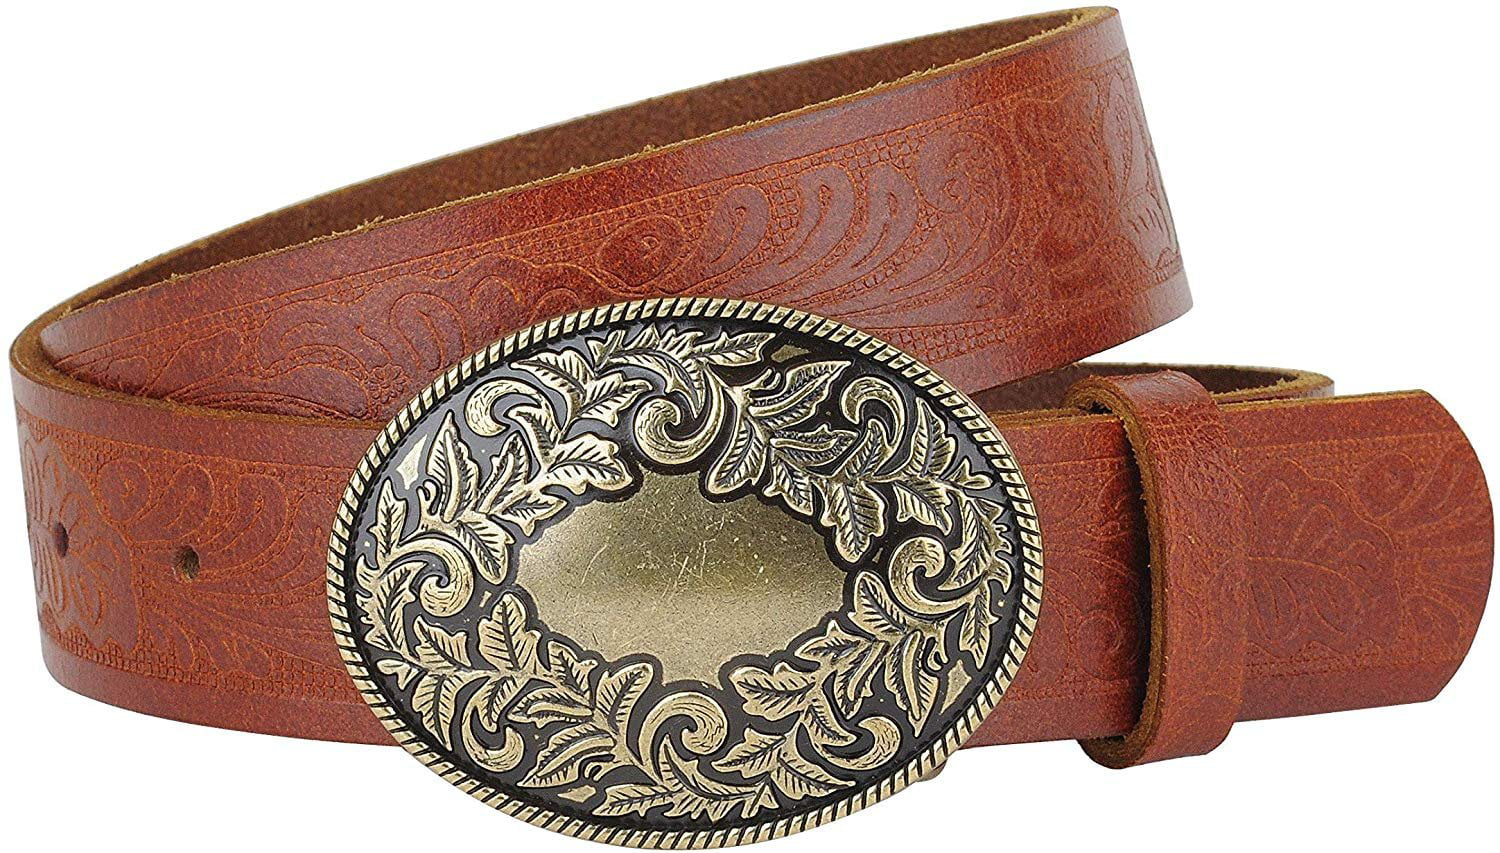 Western Leather Belts For Women